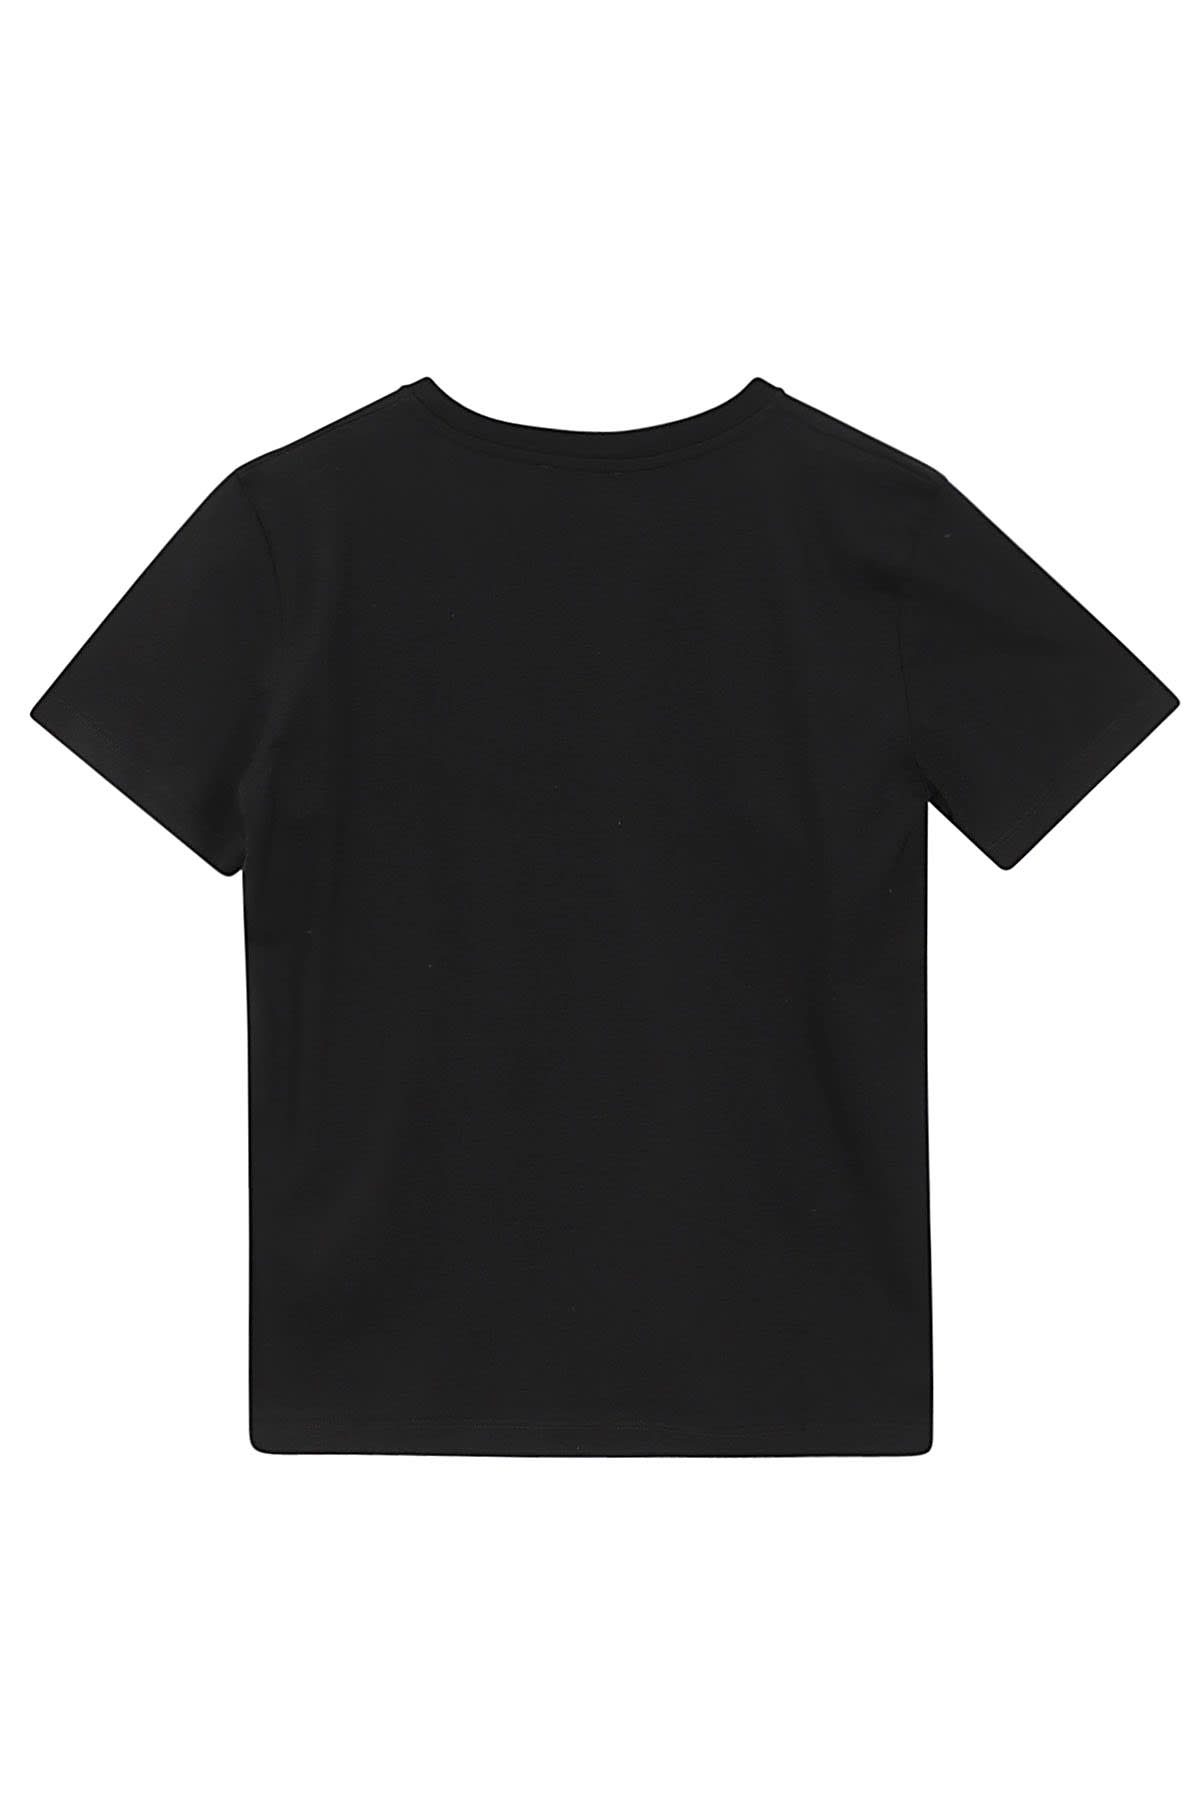 Shop Balmain T Shirt In Ag Black Silver